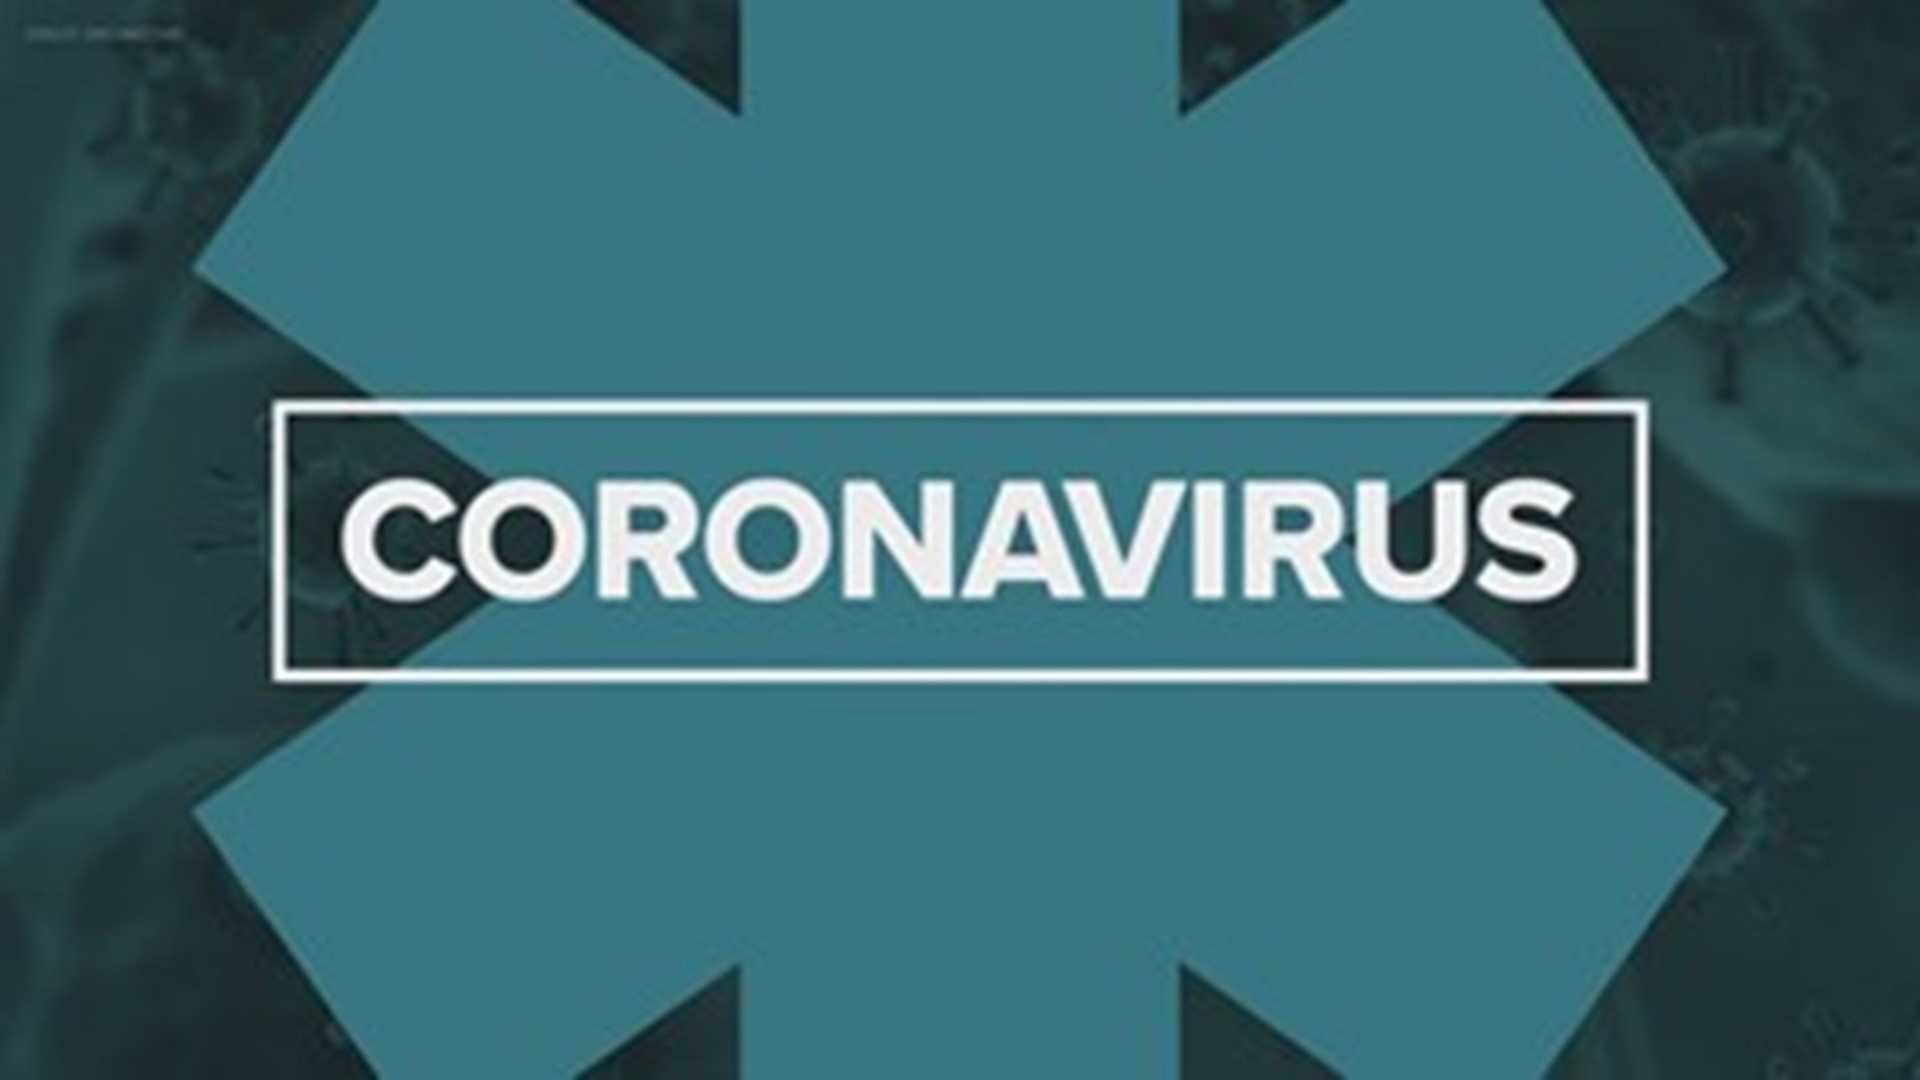 Latest updates on the coronavirus pandemic for Thursday, Dec. 16, 2021.